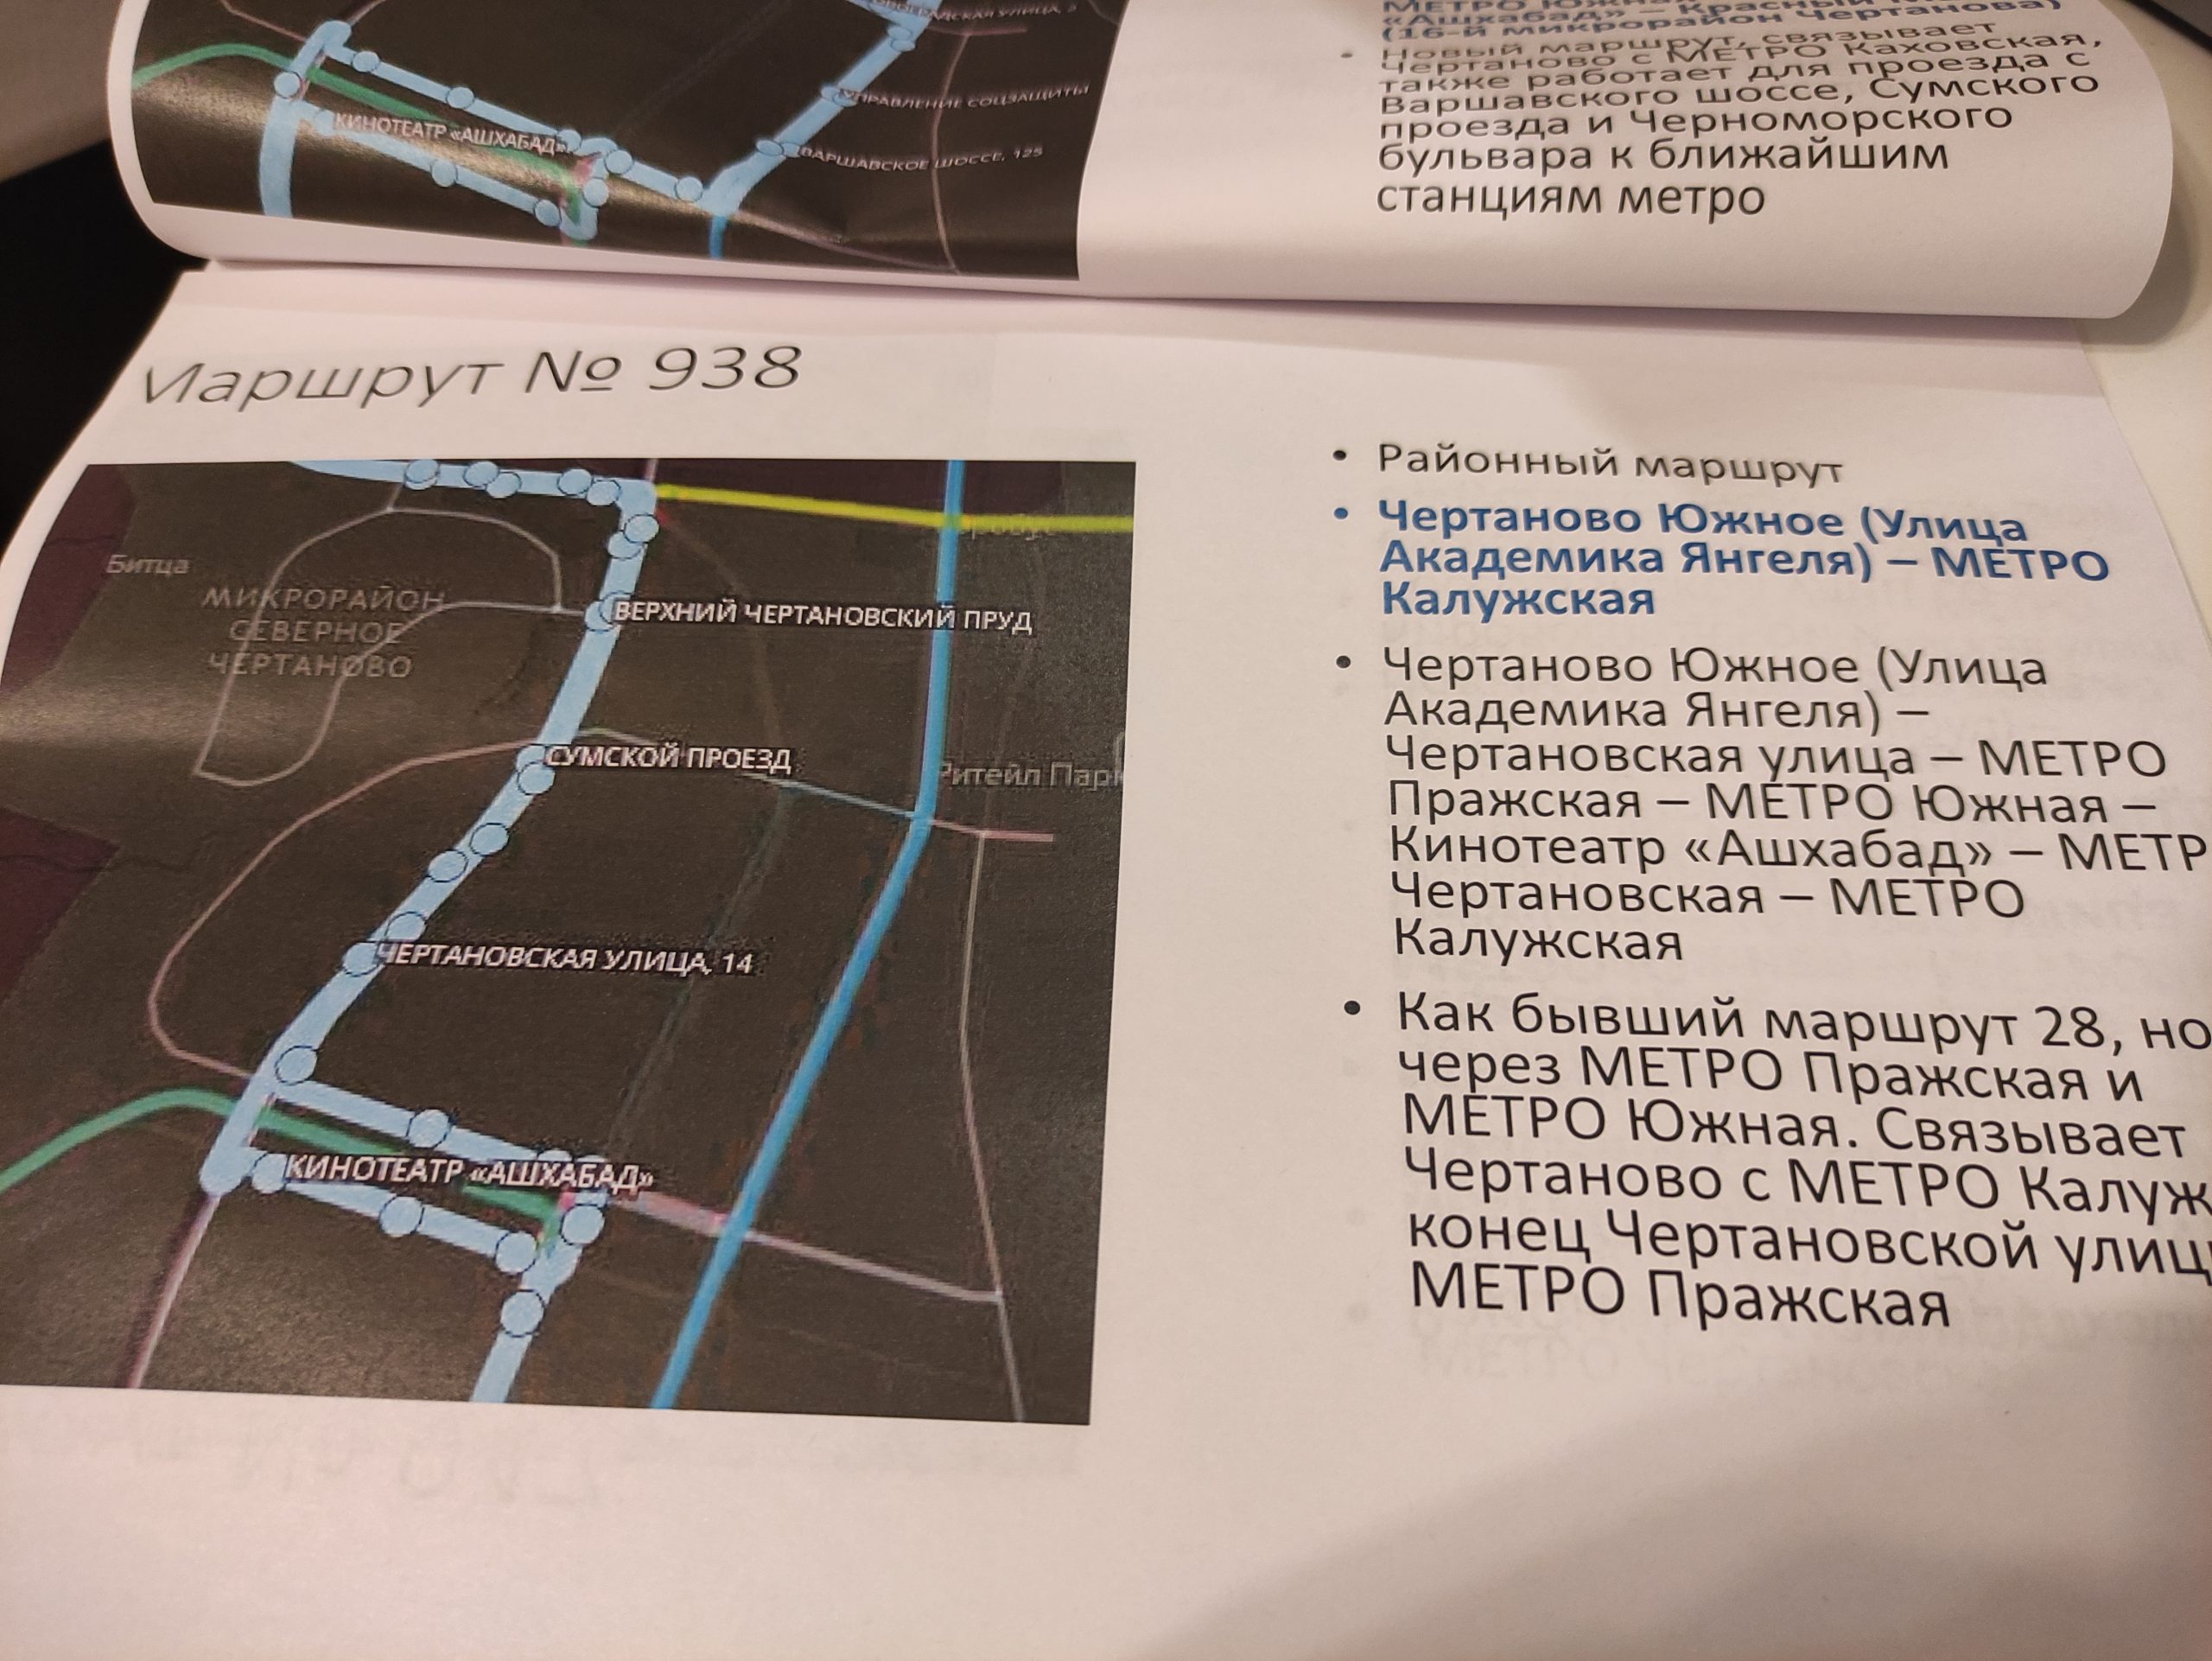 Арт-проект «Магистраль». Часть 1 — как отмены автобусных маршрутов помогут улучшить московский транспорт?